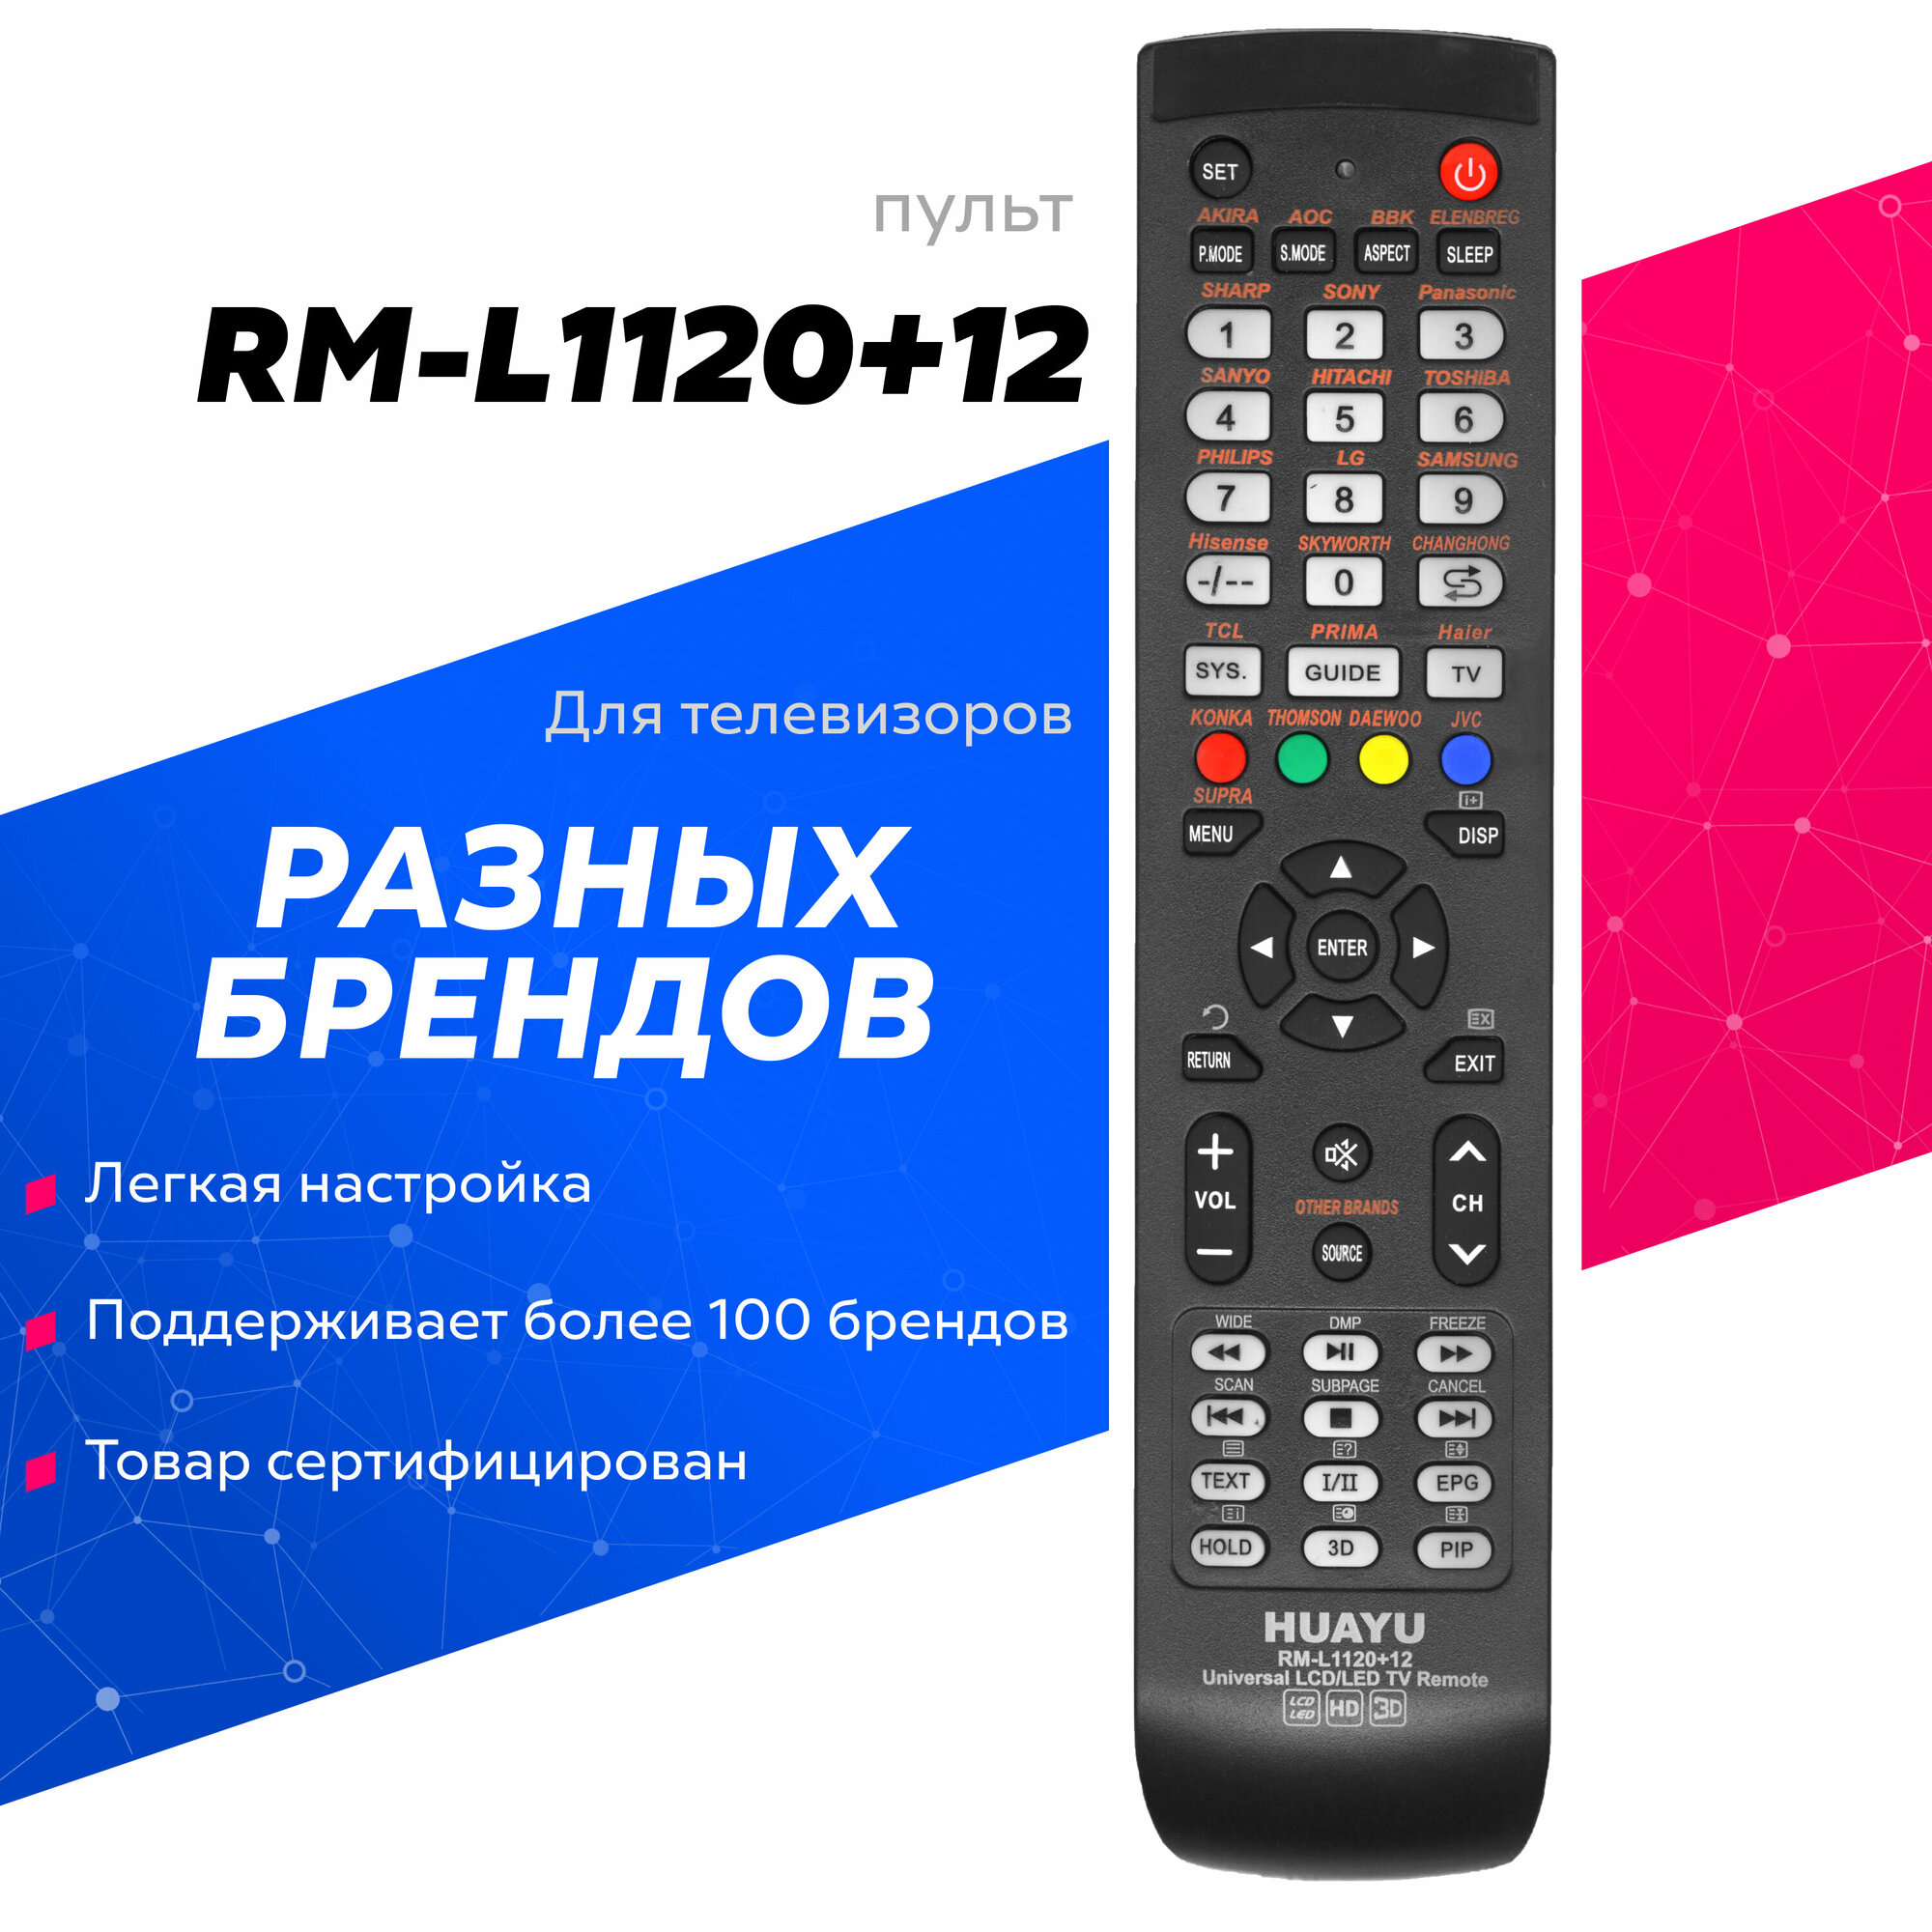 Универсальный пульт HUAYU RM-L1120+12 для телевизоров разных брендов